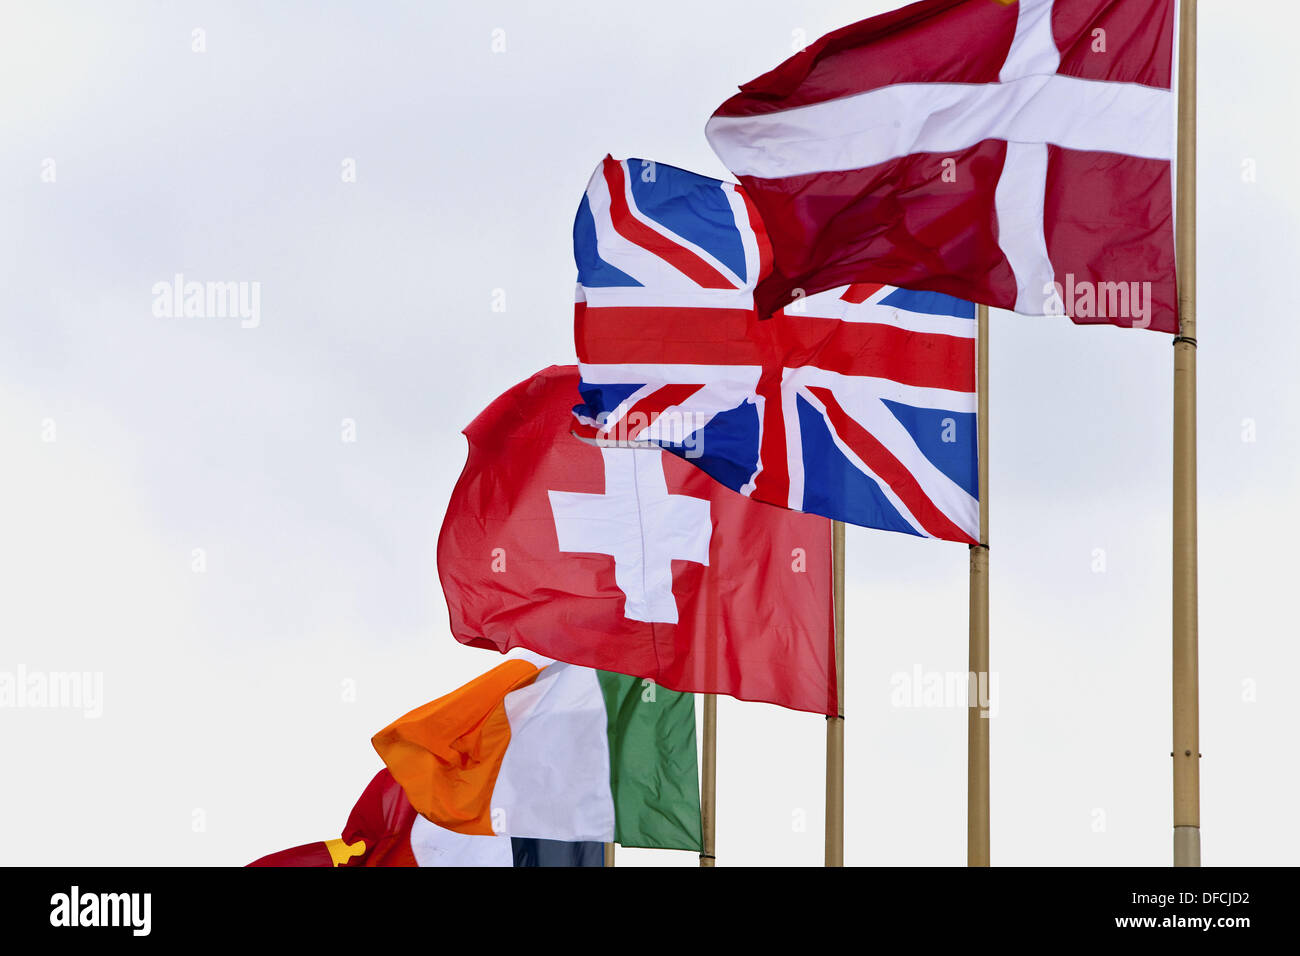 Fliegenden Fahnen der Schweiz, Dänemark, Vereinigtes Königreich und Irland  Stockfotografie - Alamy